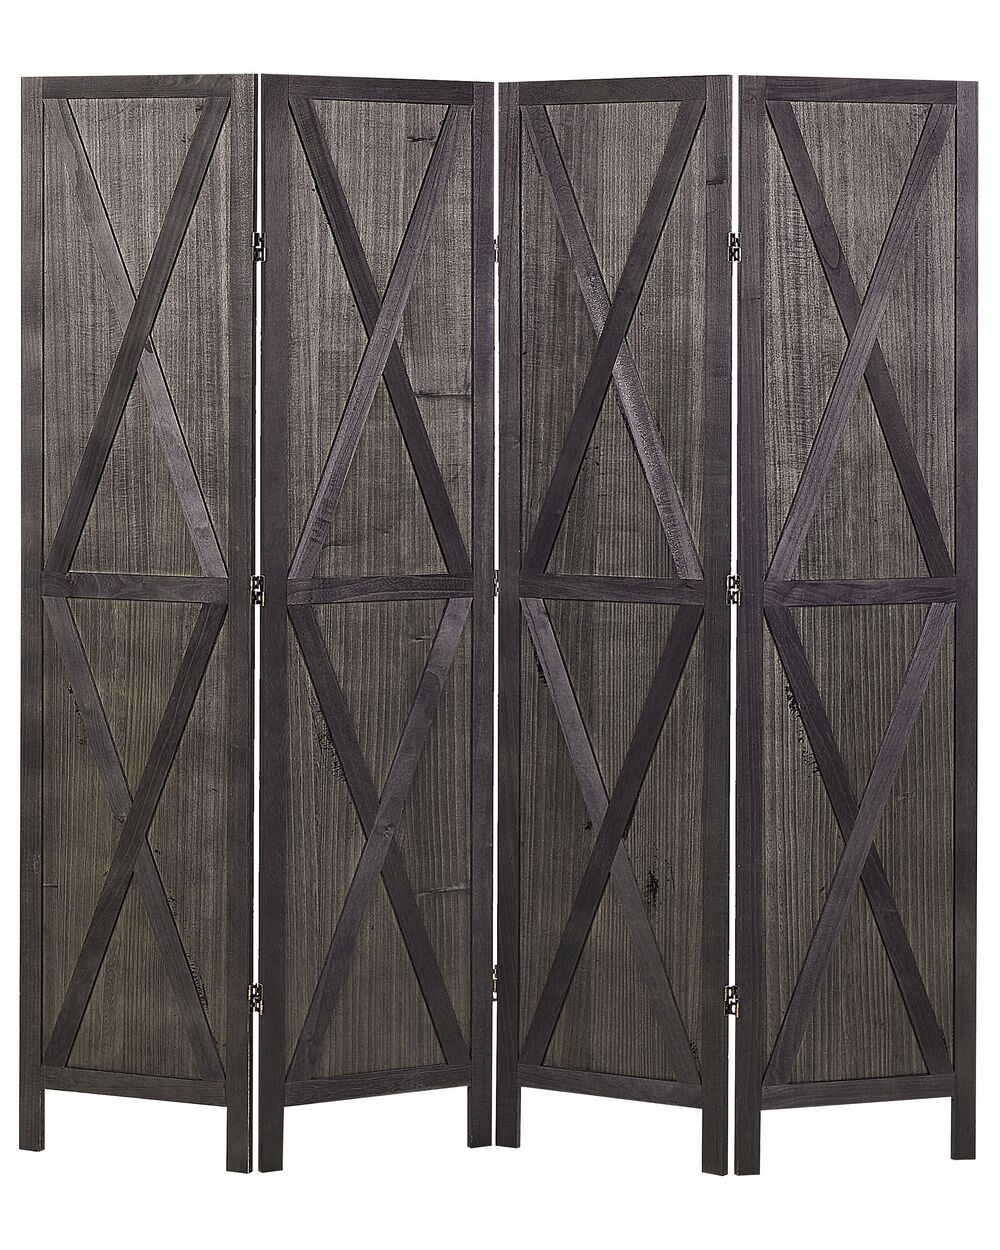 Biombo plegable 4 paneles de madera marrón oscuro 170 x 163 cm RIDANNA 